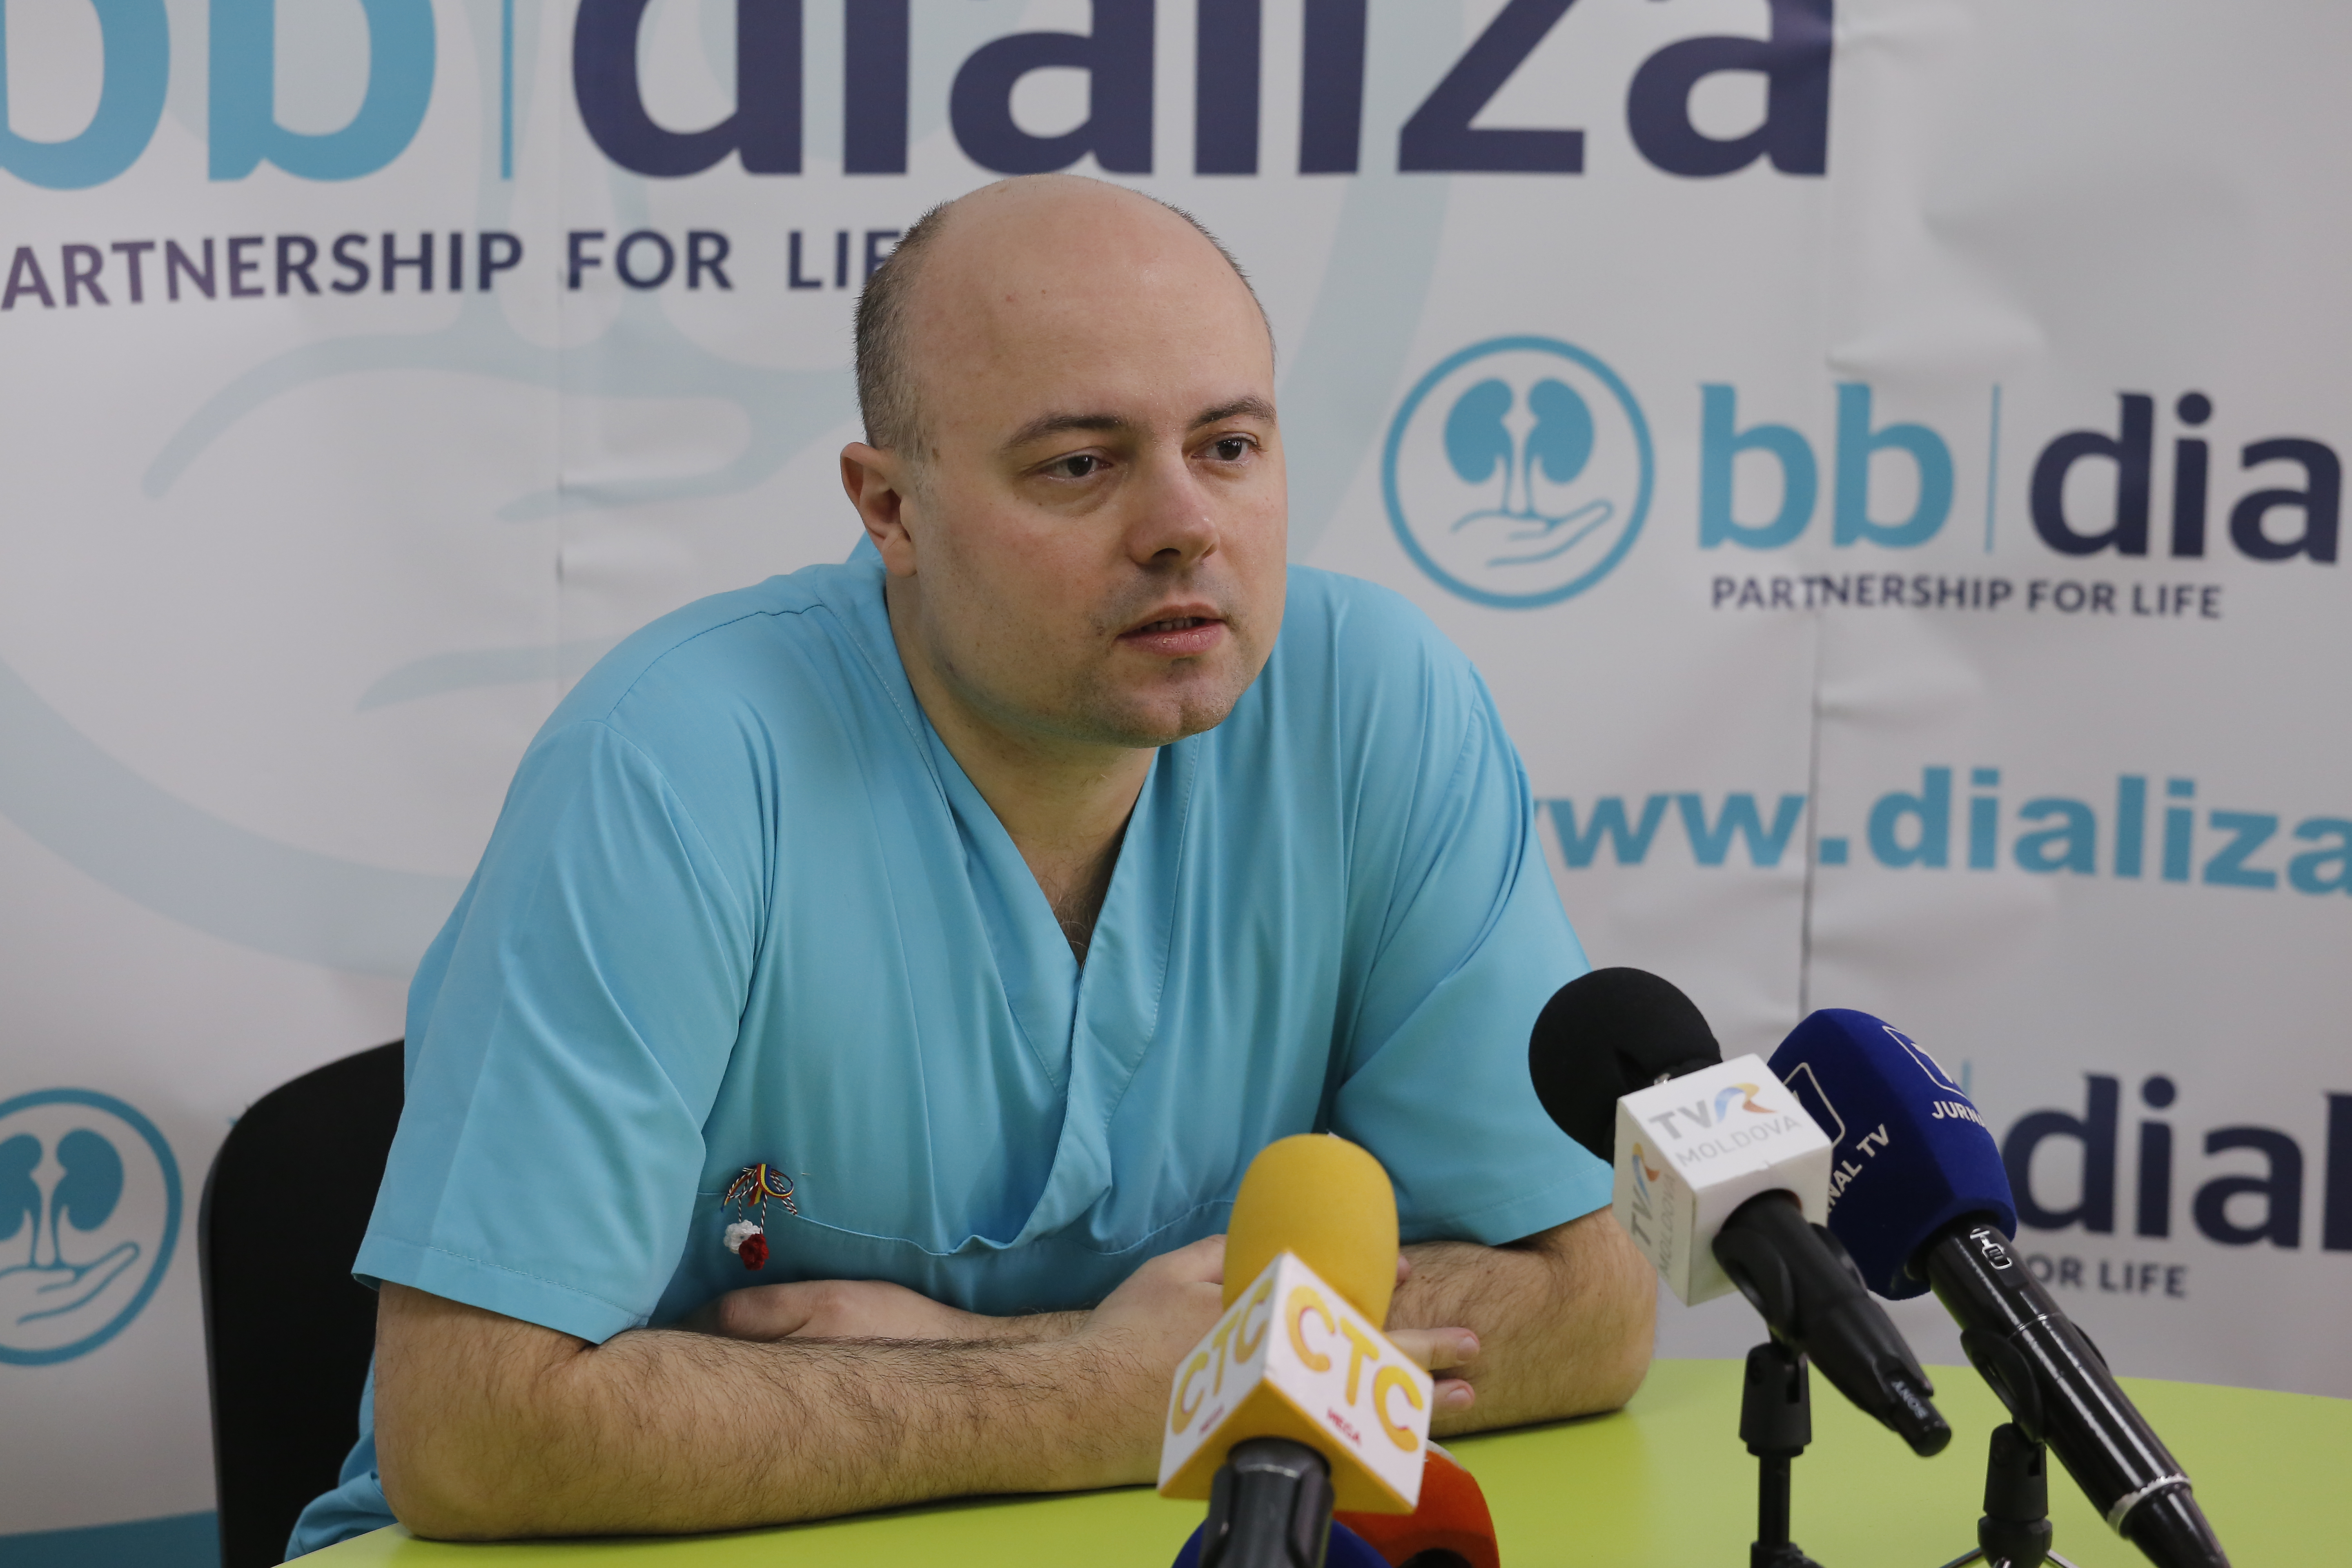 Интервью с медицинским директором Центра BB-Dializă, Петру Чепойда: «Бесспорно, результаты подтвердили – частно-государственное партнёрство для услуг диализа было правильным выбором».